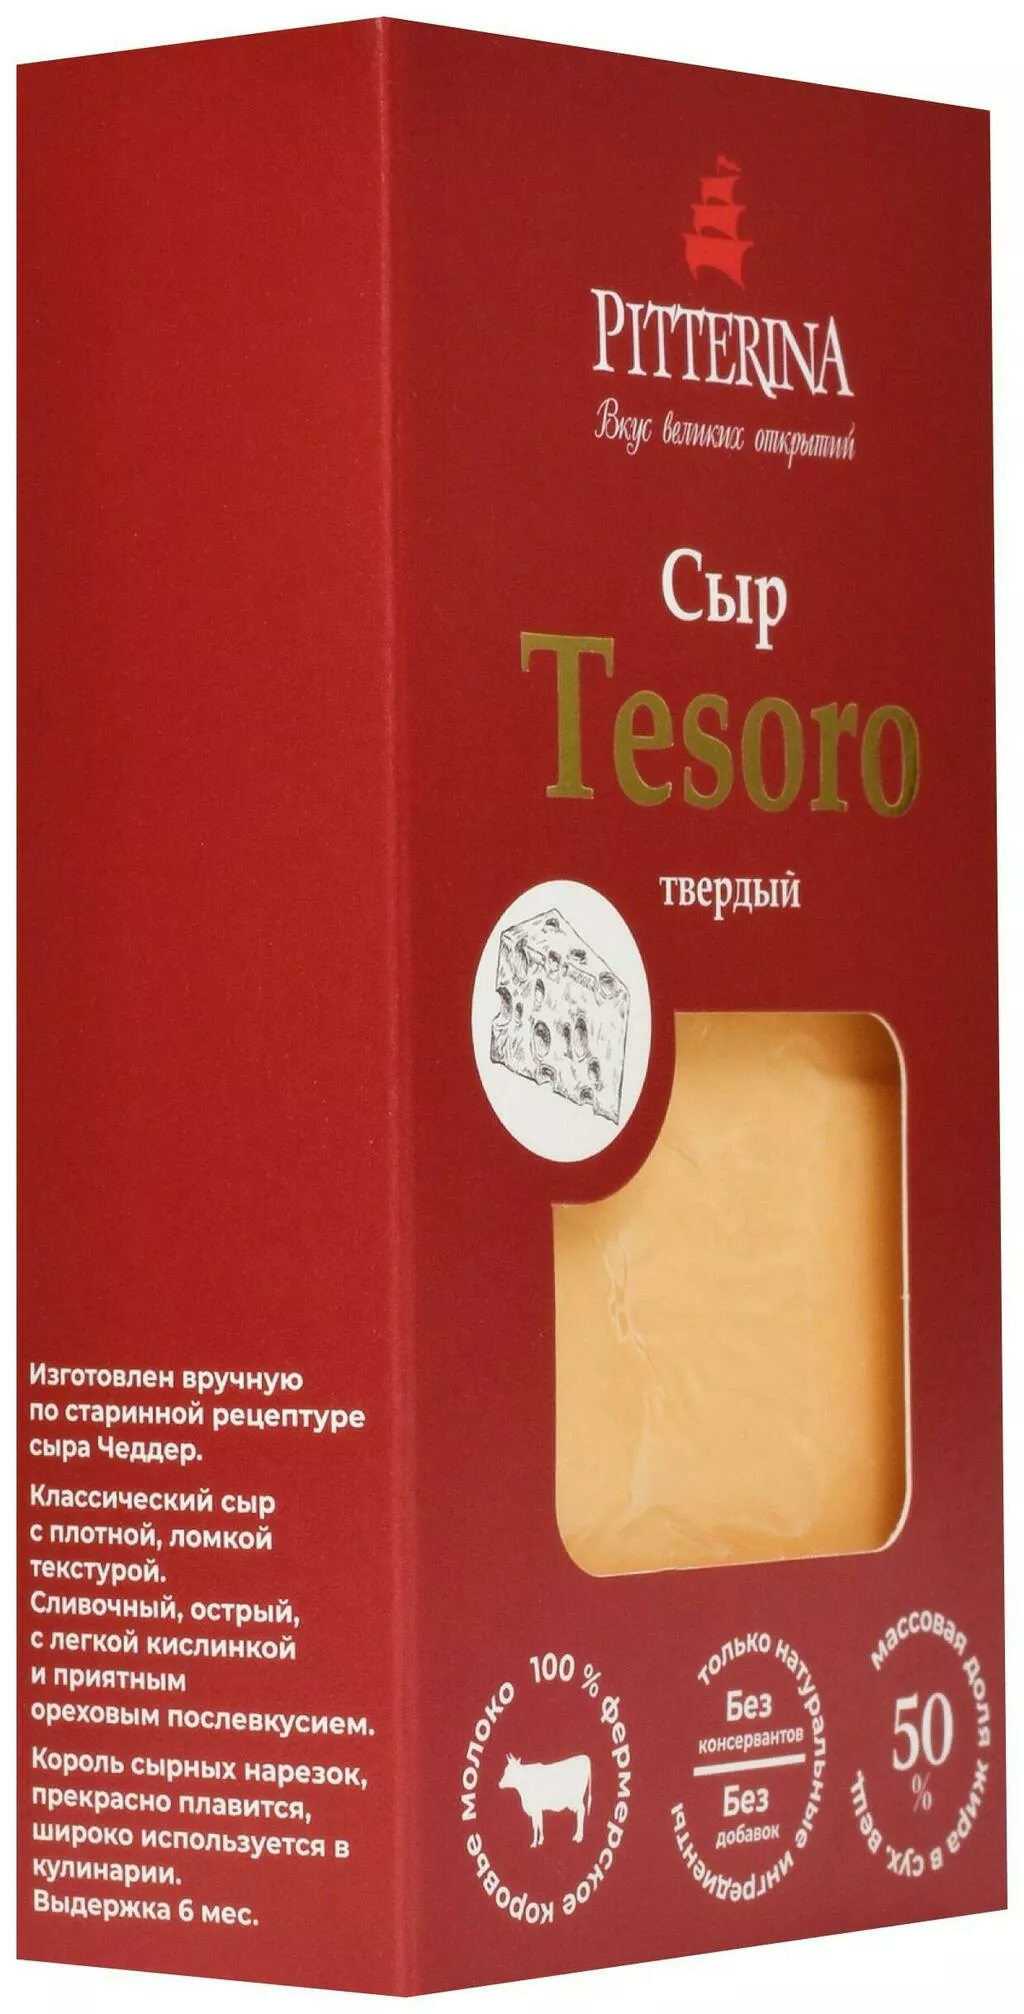 сыр из козьего и коровьего молока, опт в Санкт-Петербурге и Ленинградской области 4